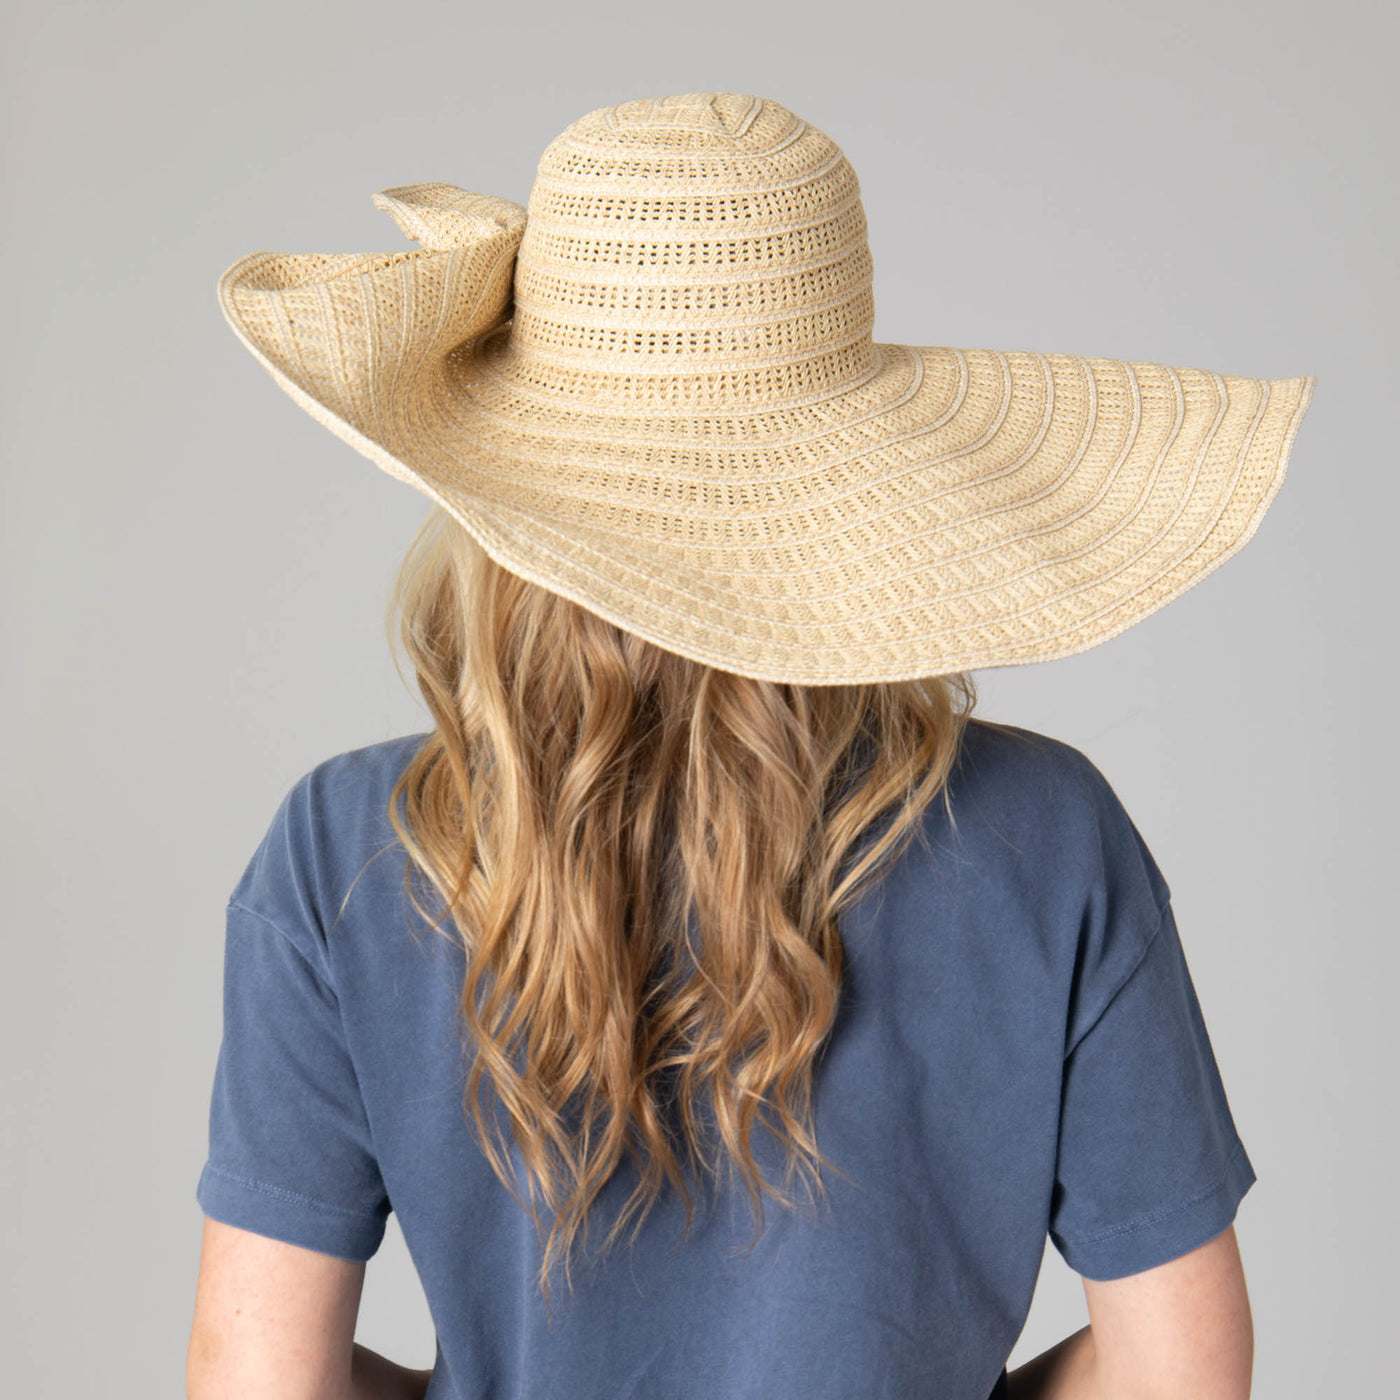 Dune - Women's Wide Brim Round Crown Floppy-FLOPPY-San Diego Hat Company